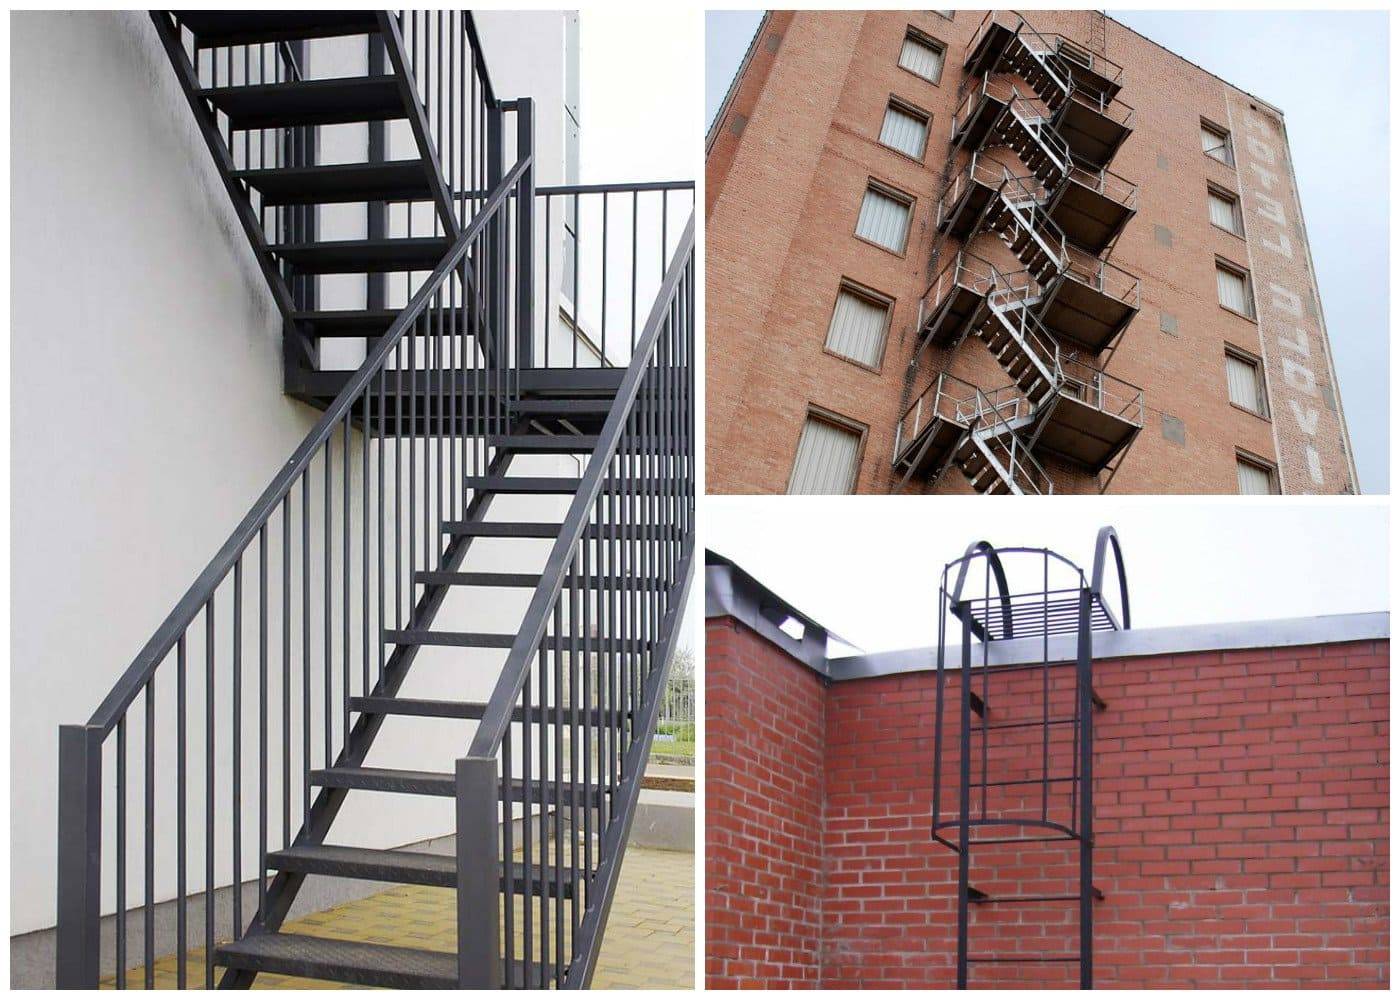 Есть разные виды и типы пожарных лестниц - внутренние и наружные, вертикальные и маршевые.